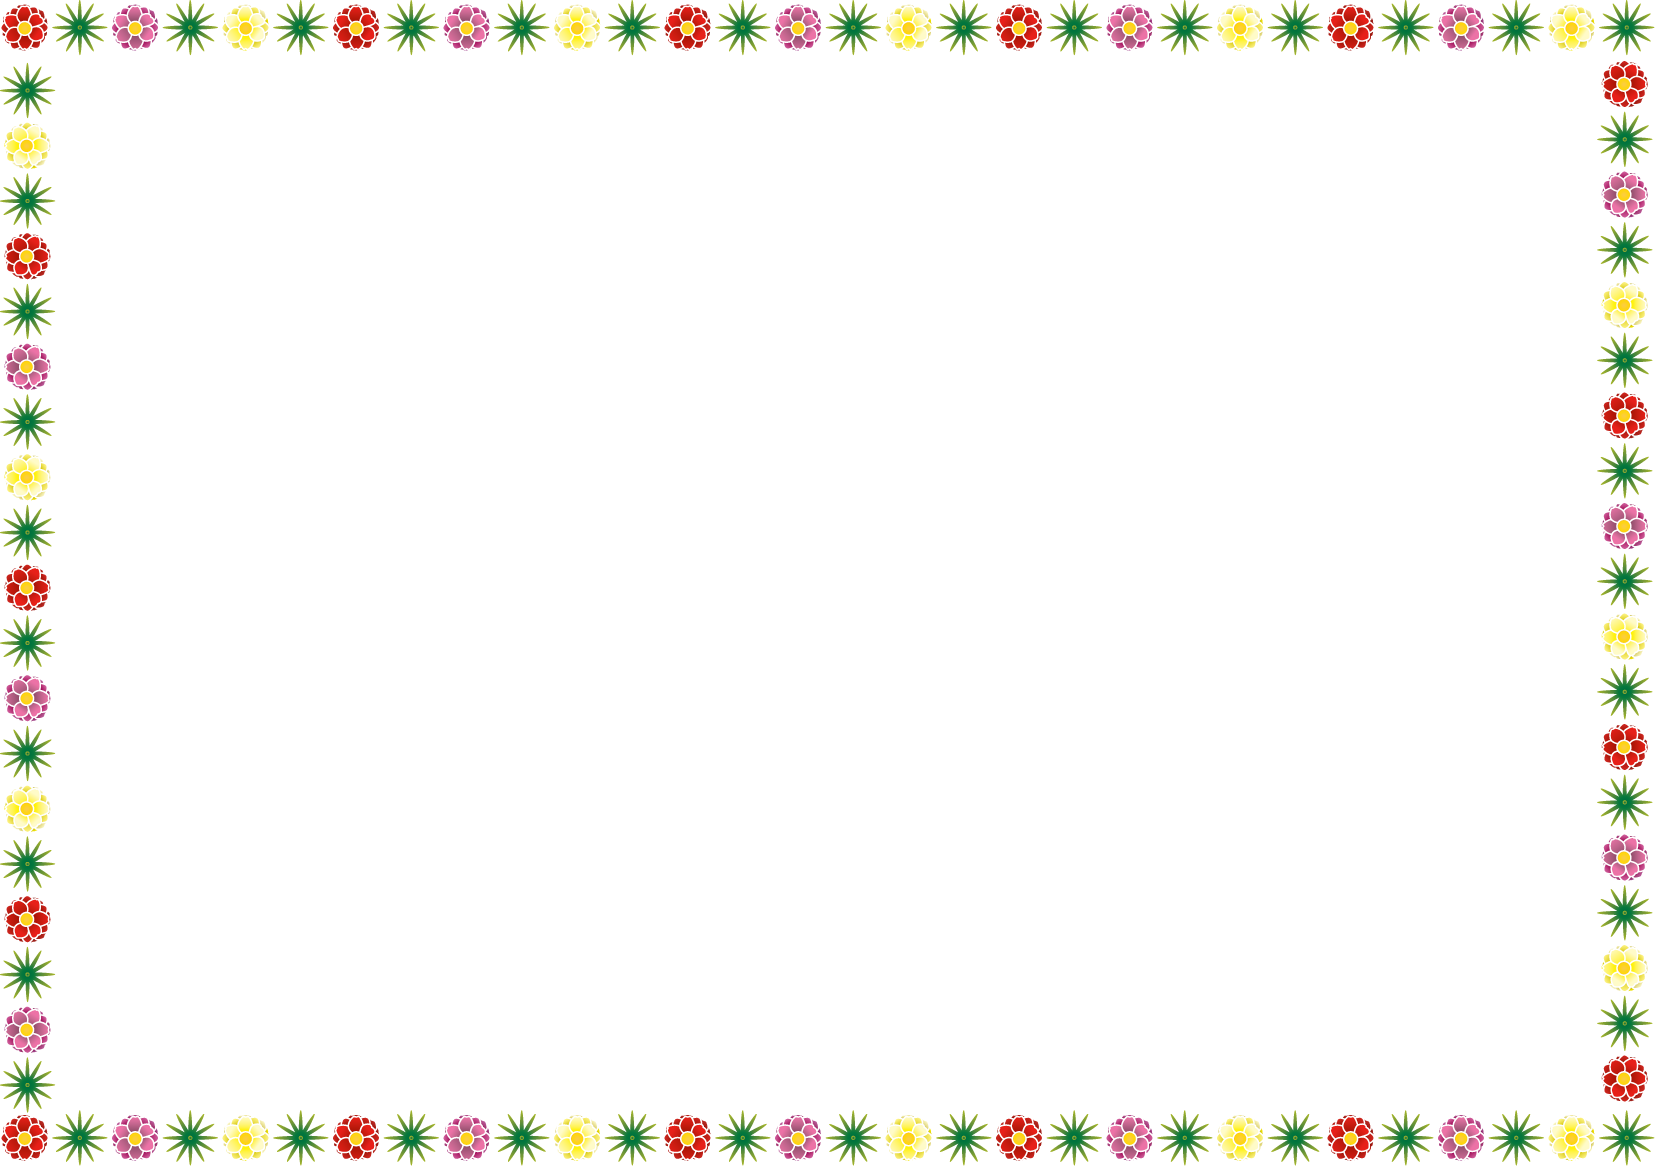 夏の花の飾り枠02-松葉ボタンイラスト